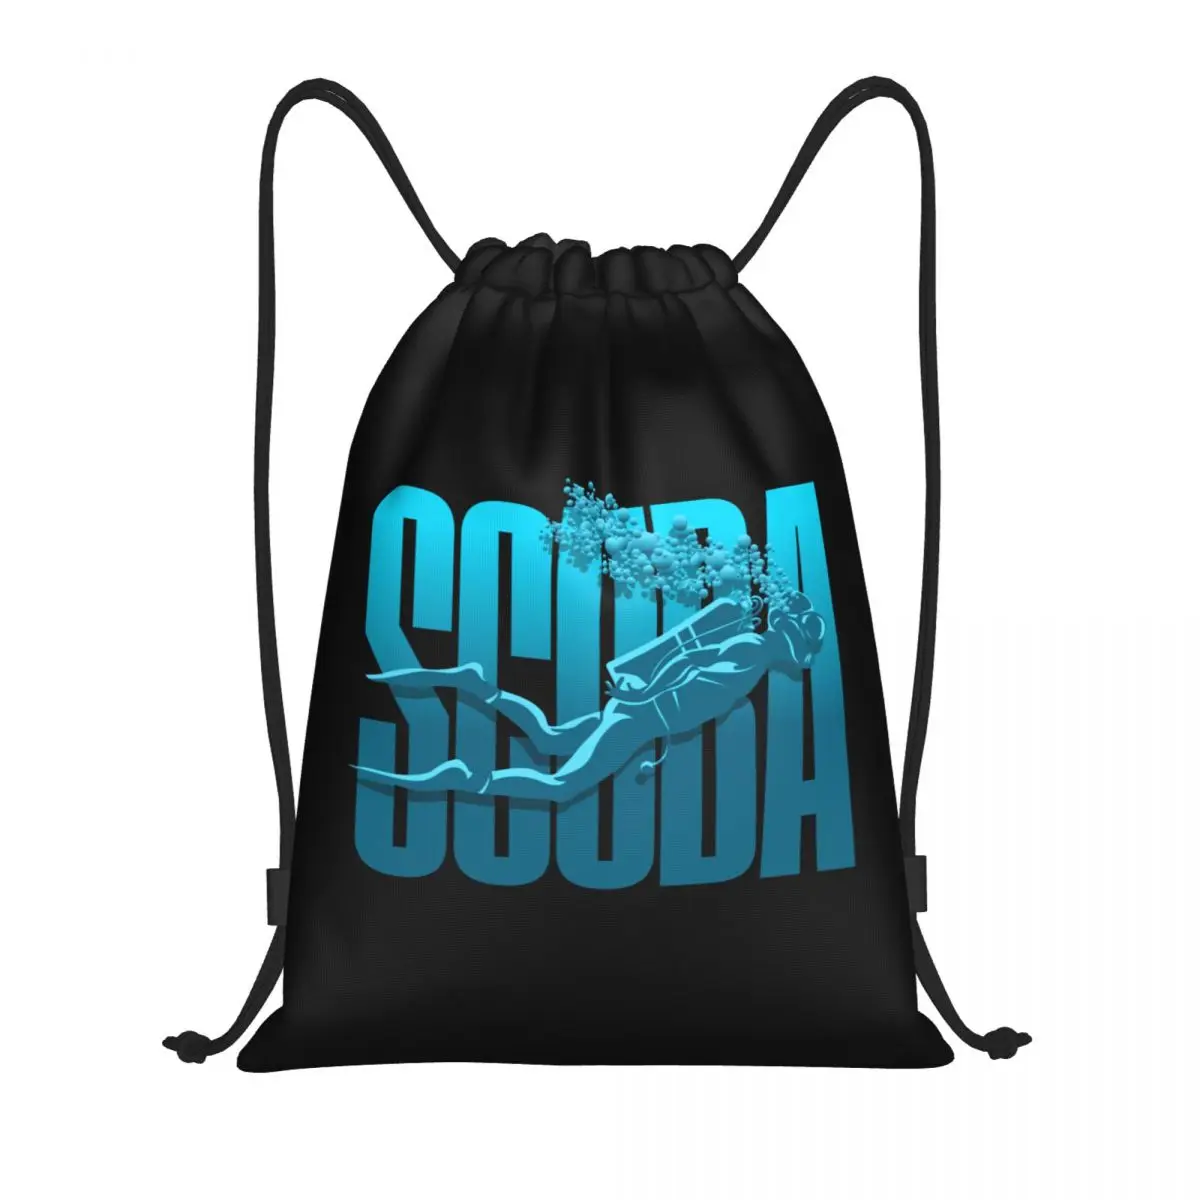 

Индивидуальная сумка на шнурке для подводного плавания для тренировок, йоги, рюкзаки для женщин и мужчин, спортивный рюкзак для океан, дайвинга, спортзала